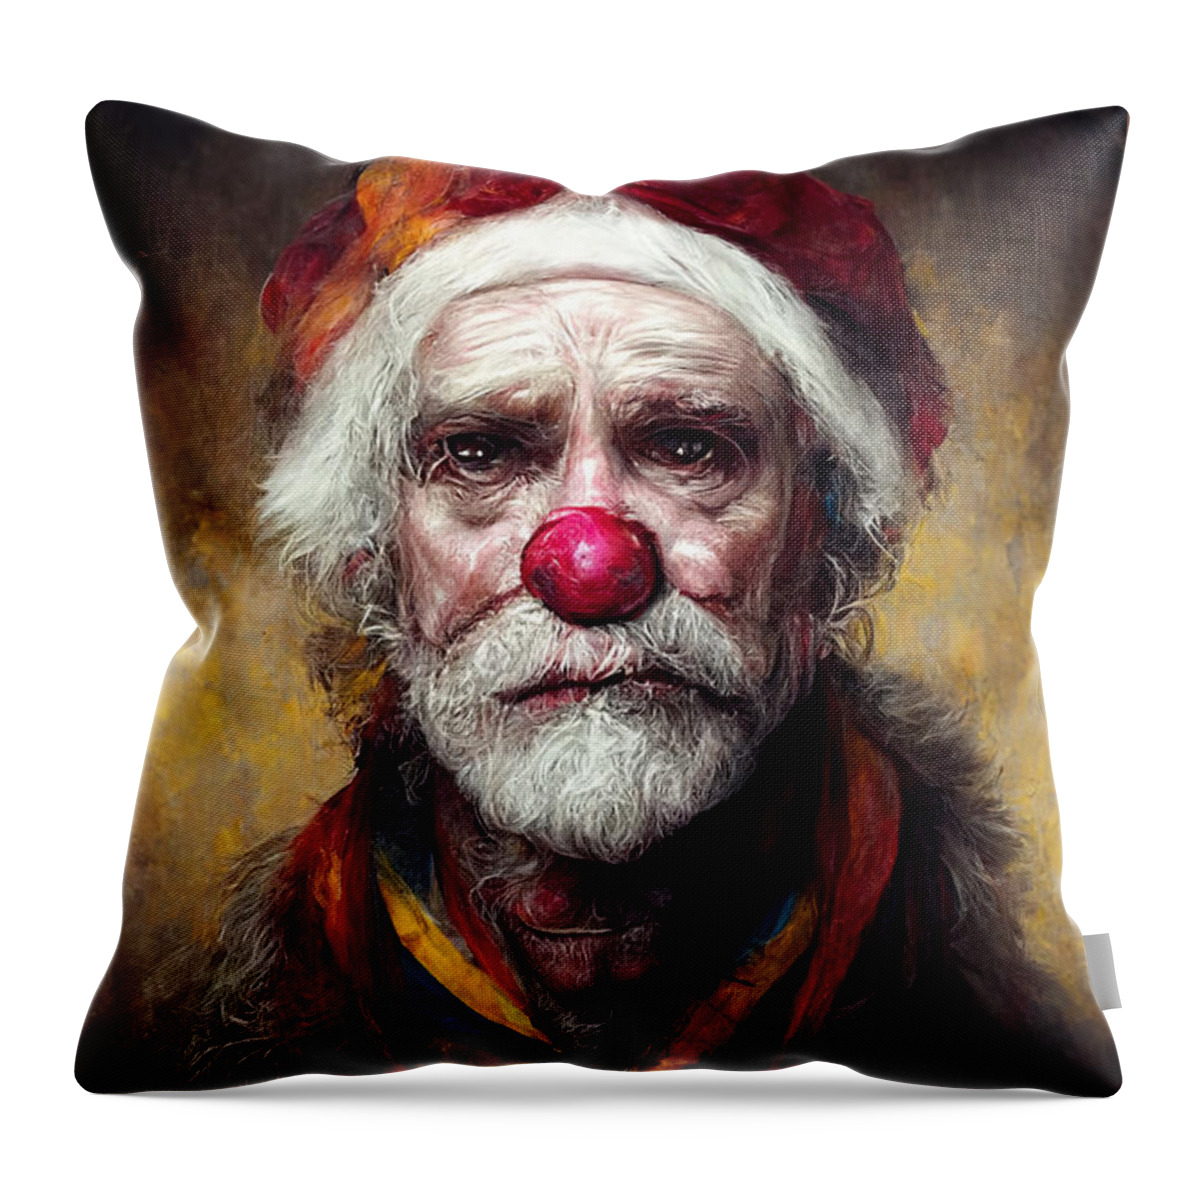 Santa Clown Throw Pillow featuring the digital art Santa Clown by Trevor Slauenwhite